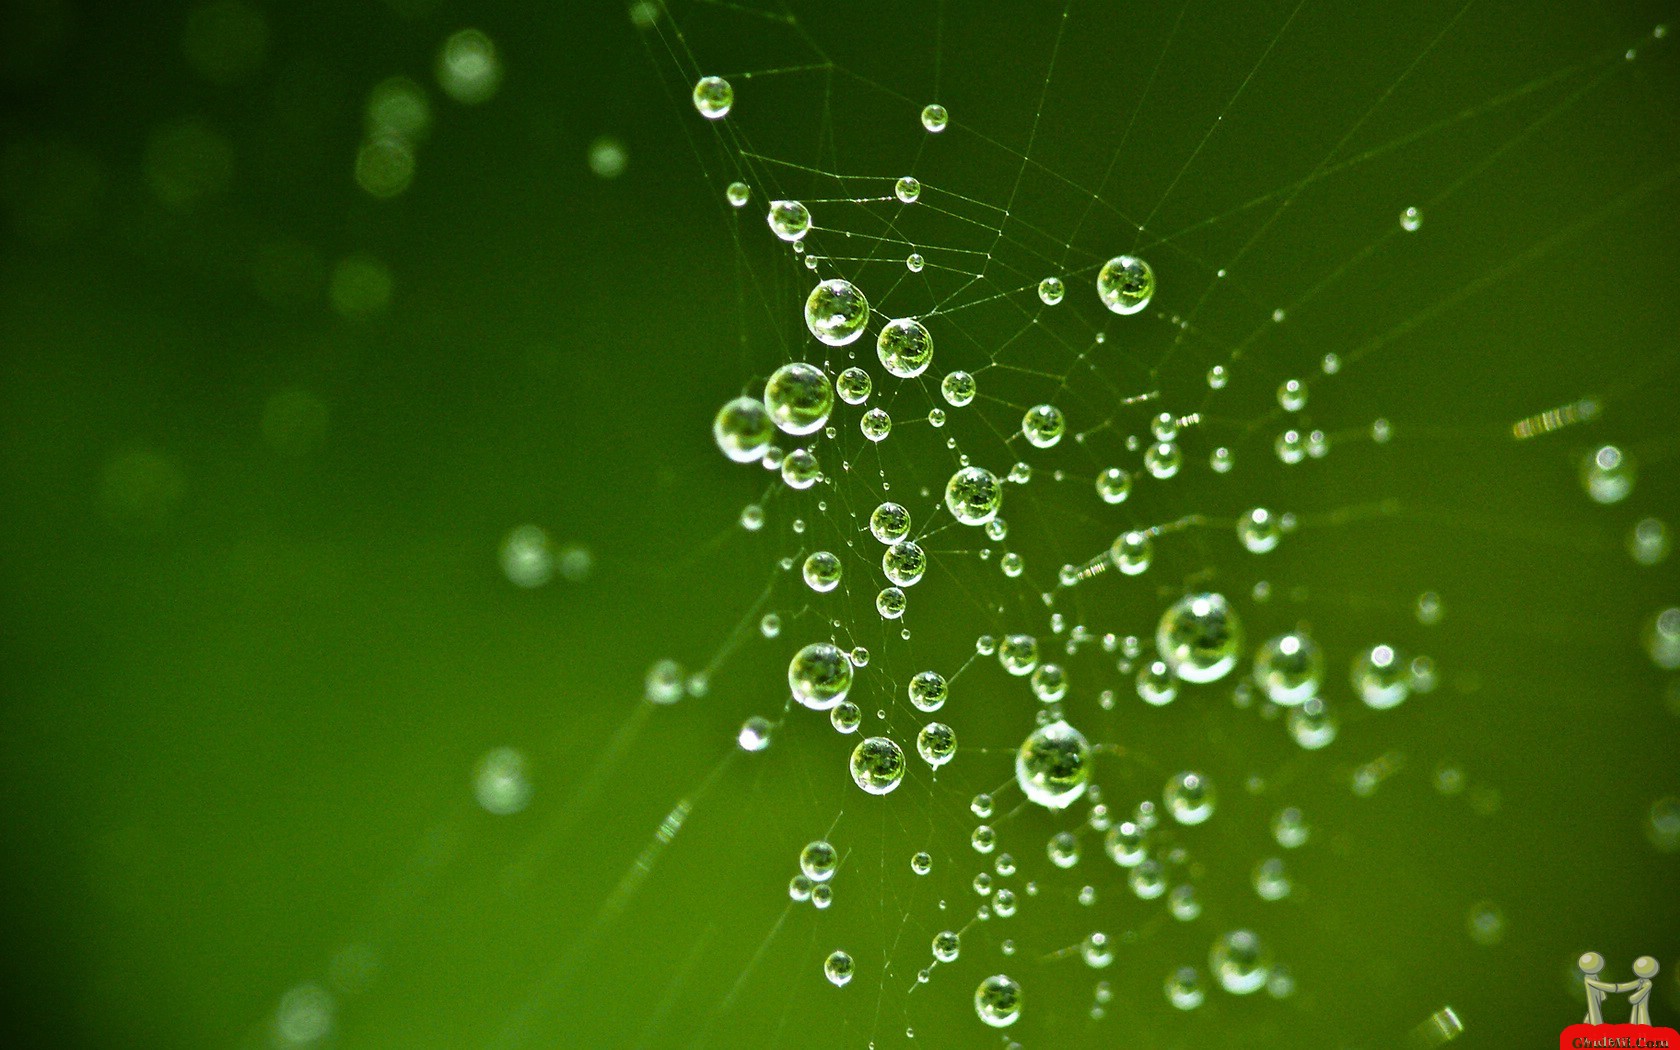 Dew drops on spider web Wallpaper New HD Wallpaper Widescreen 1680x1050